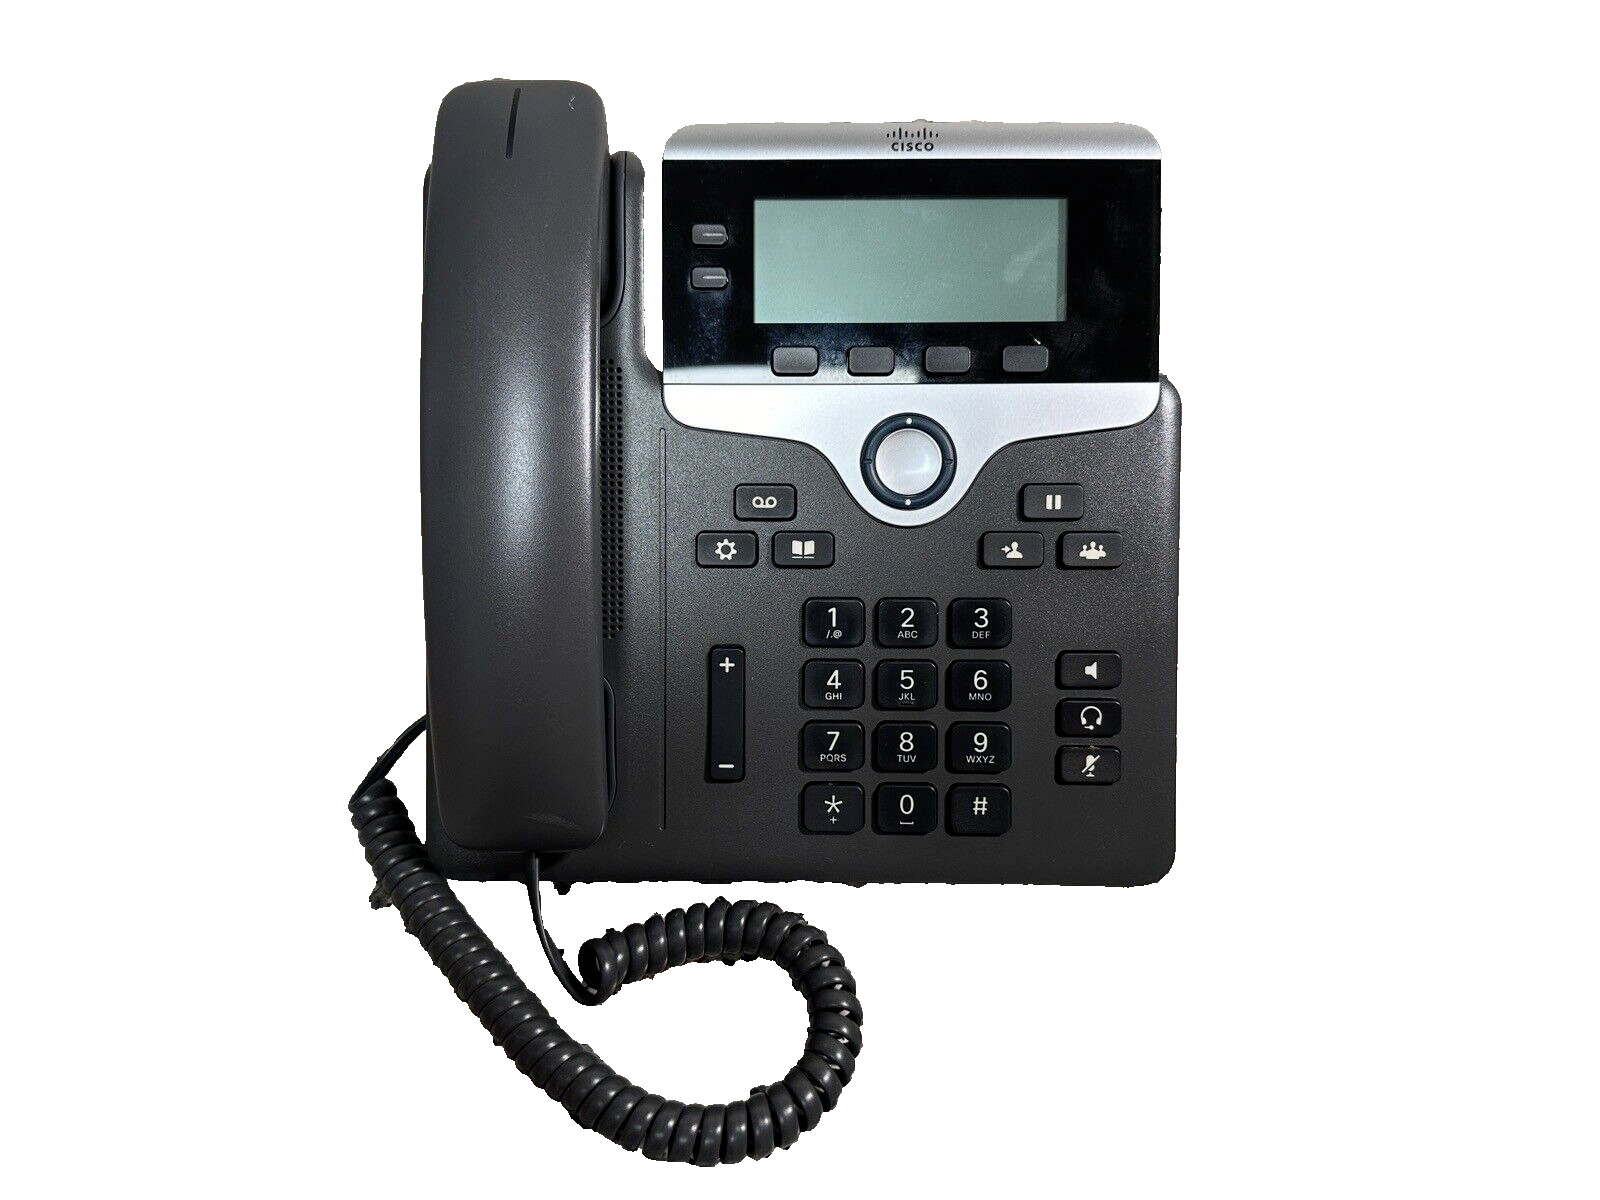 Cisco 7821 IP Phone (CP-7821-K9=) - Brand New